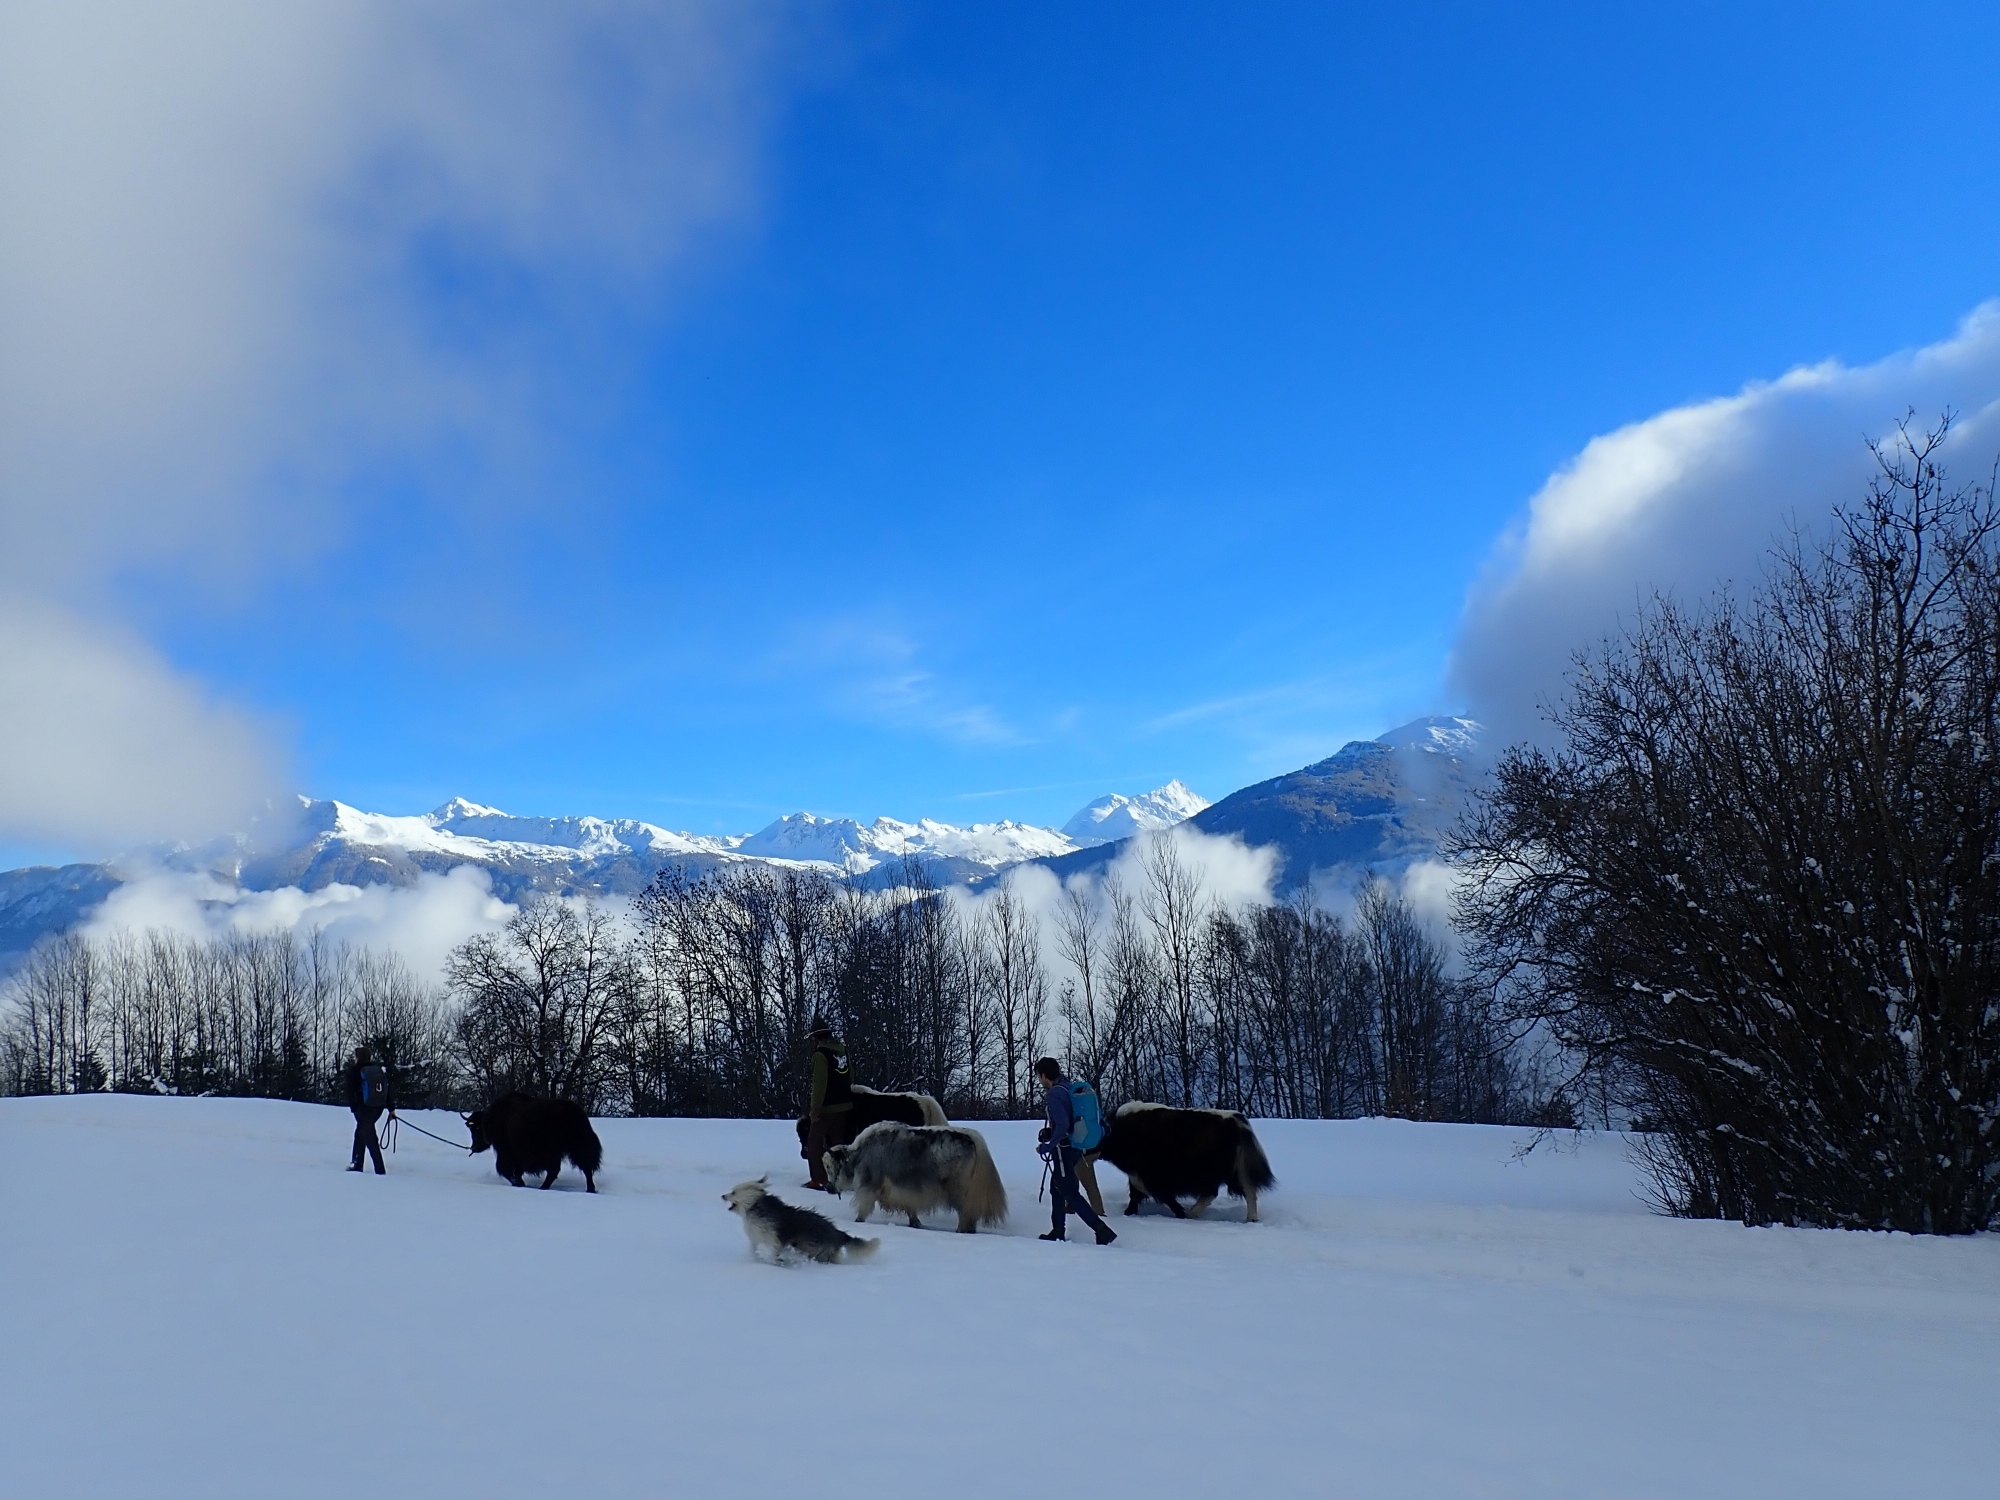 Les yaks, qui ont gardé un côté sauvage, s’adaptent bien aux conditions hivernales pour des balades dans la nature.